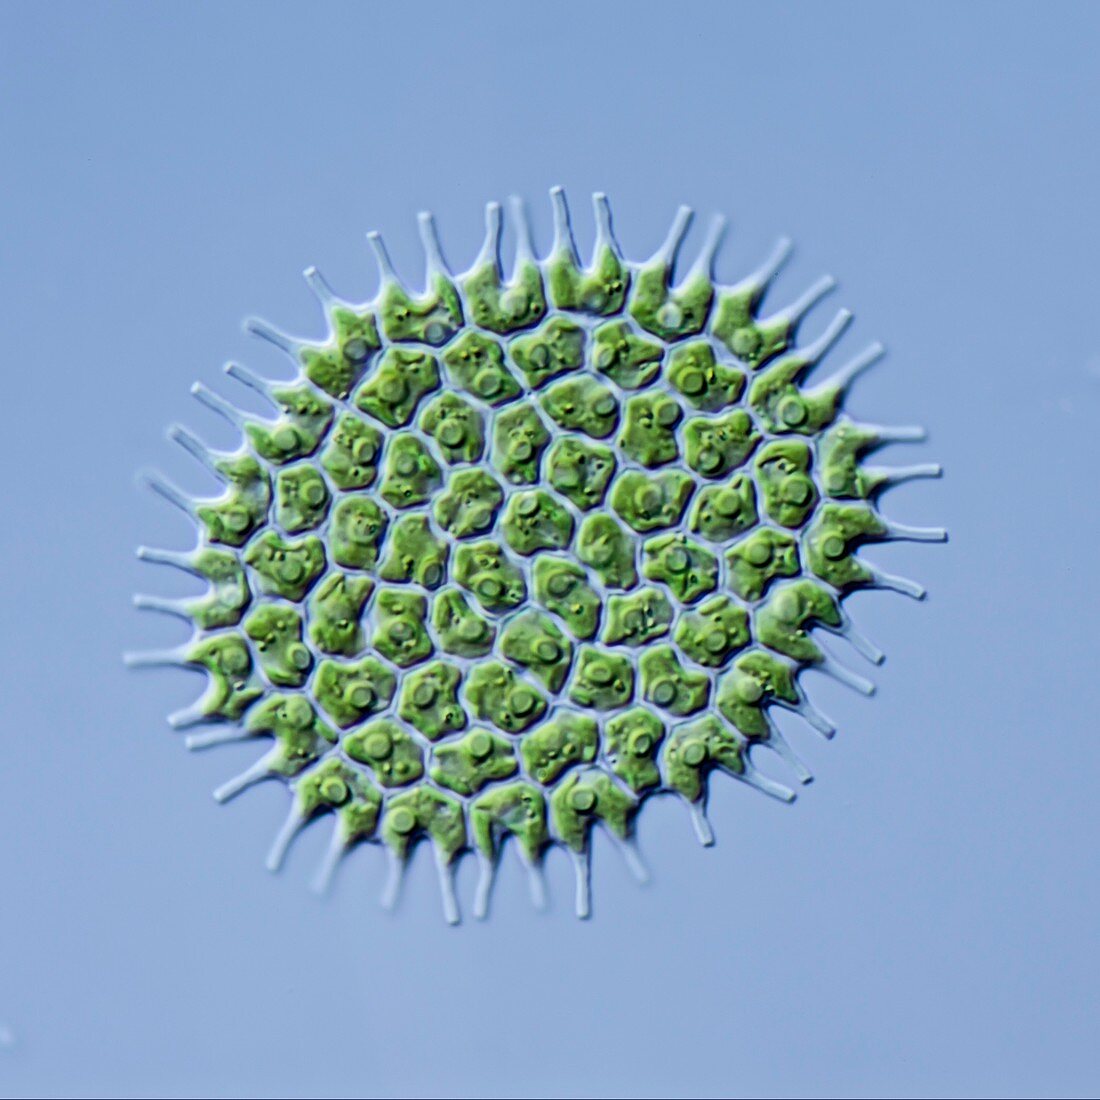 Pediastrum boryanum alga, LM